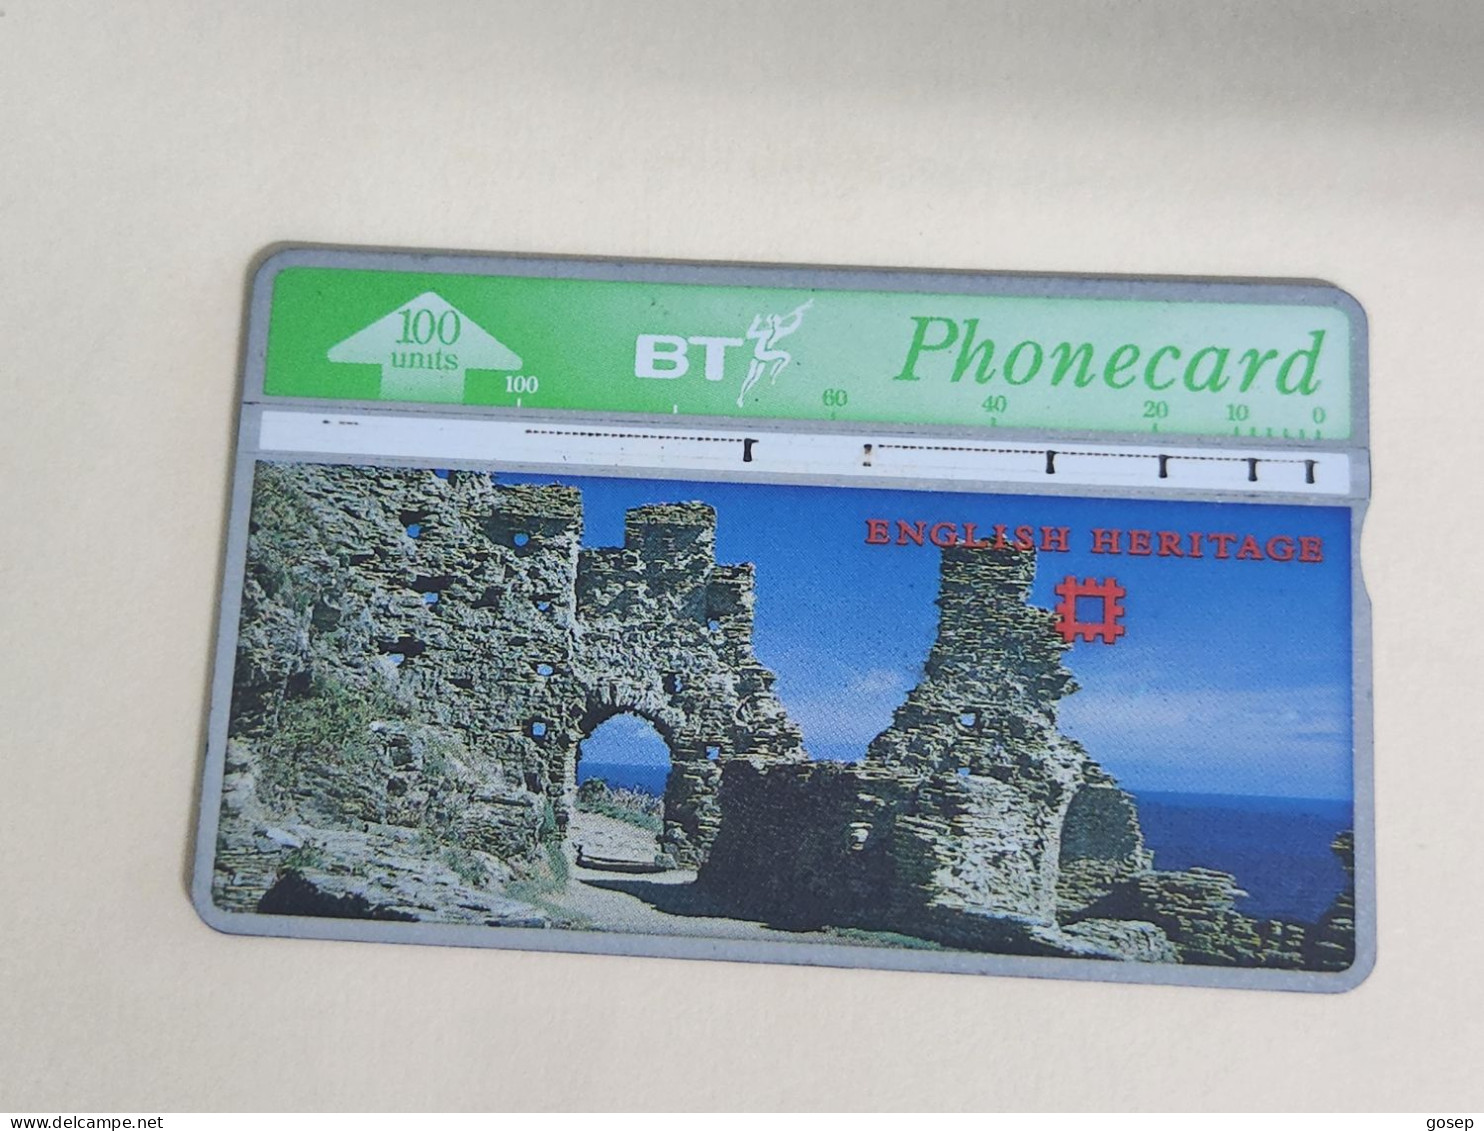 United Kingdom-(BTA121)-HERITAGE-Tintalgel Castle-(209)(100units)(527H03606)price Cataloge3.00£-used+1card Prepiad Free - BT Emissioni Pubblicitarie